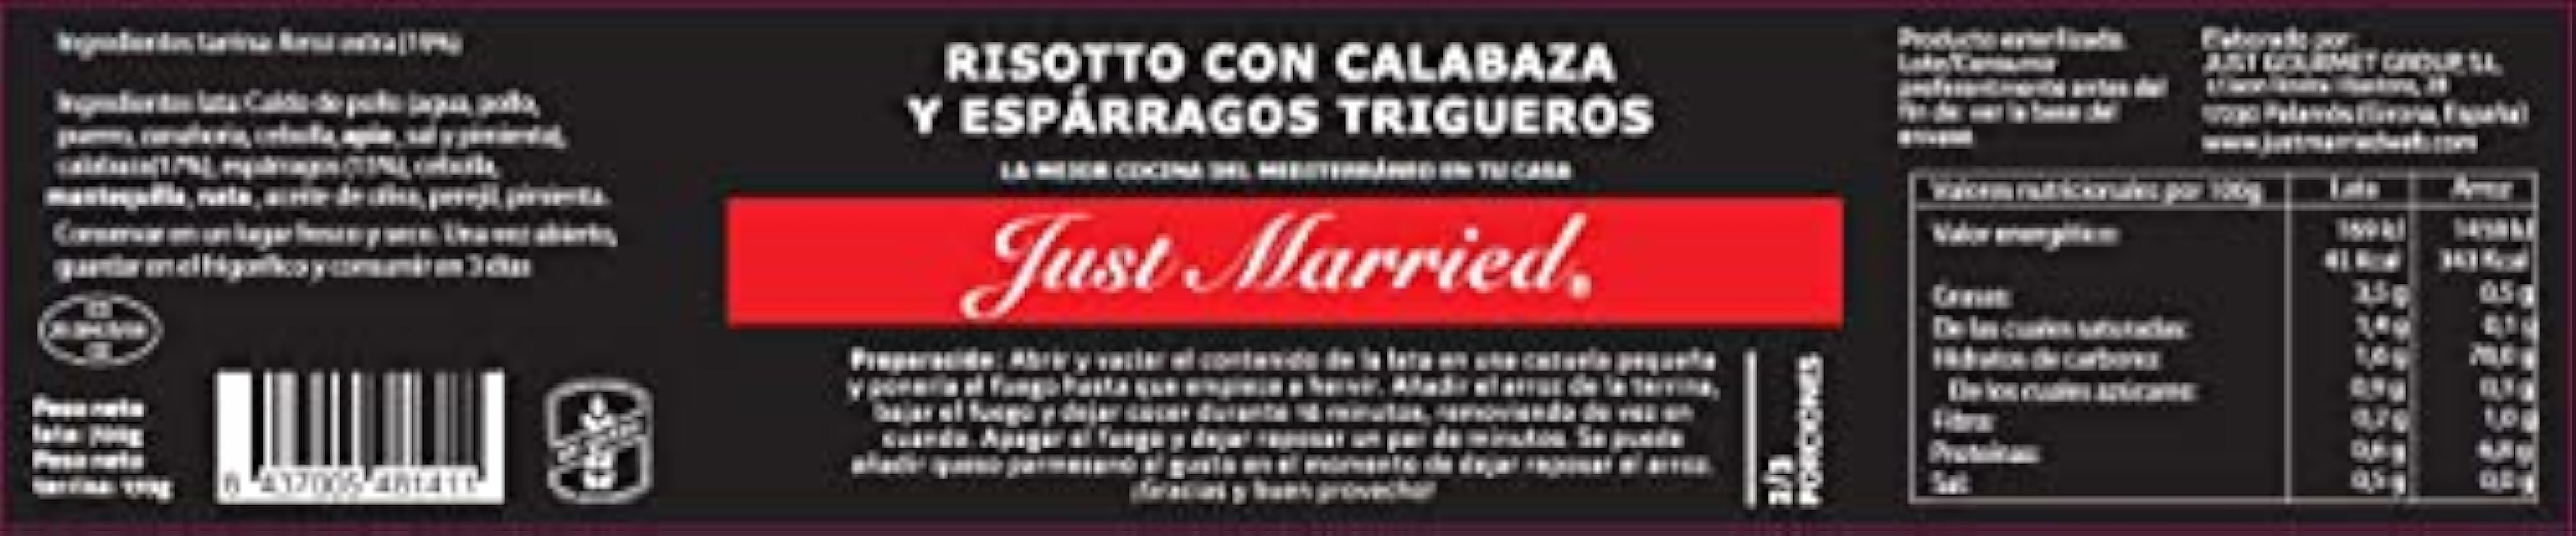 Just Married Risotto de calabaza y esparragos trigueros Jt12KI90